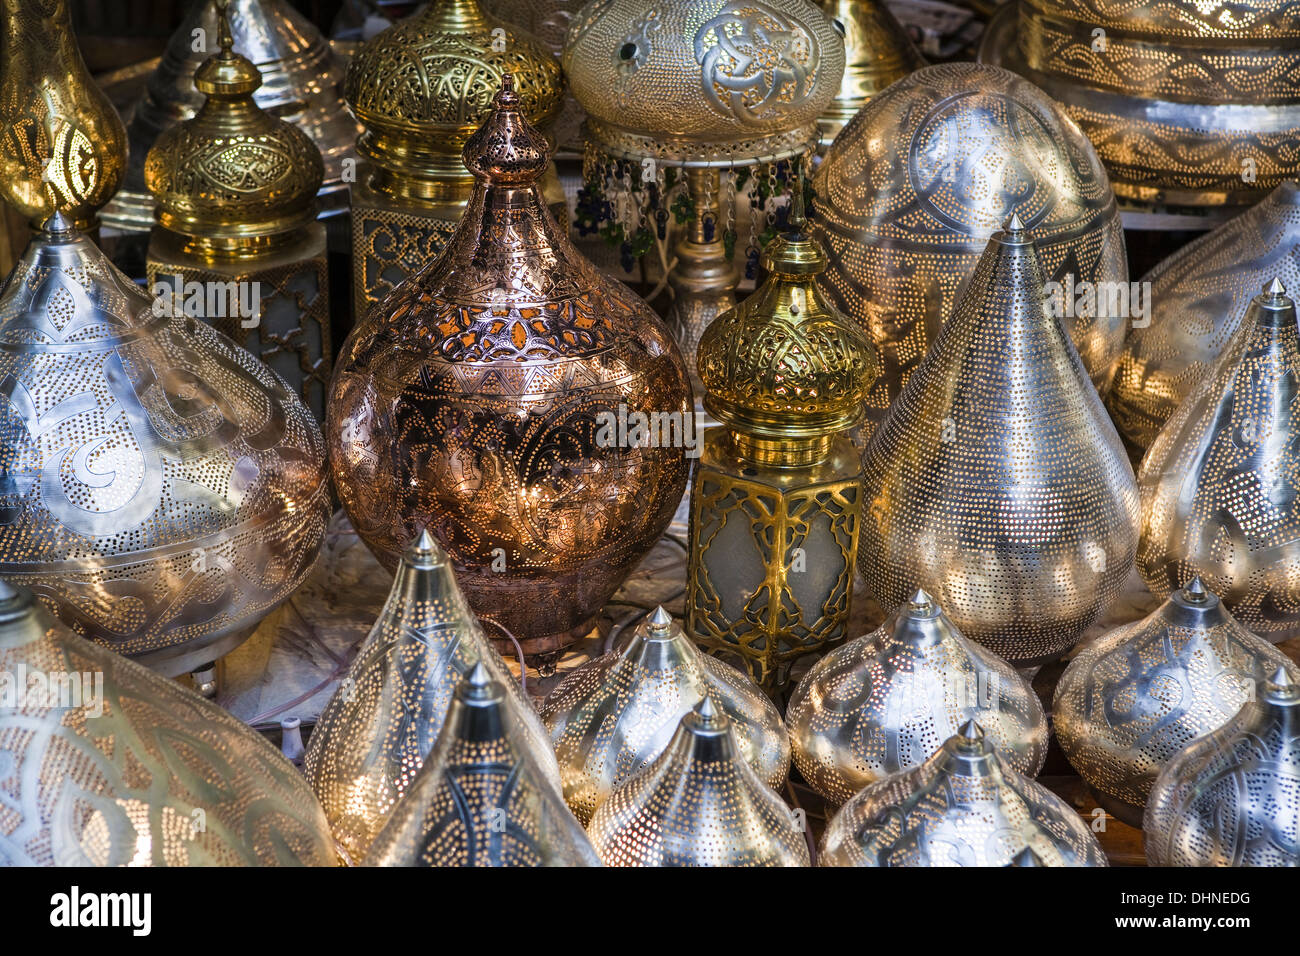 Africa, Egypt, Cairo, the Khal El Khalili market Stock Photo